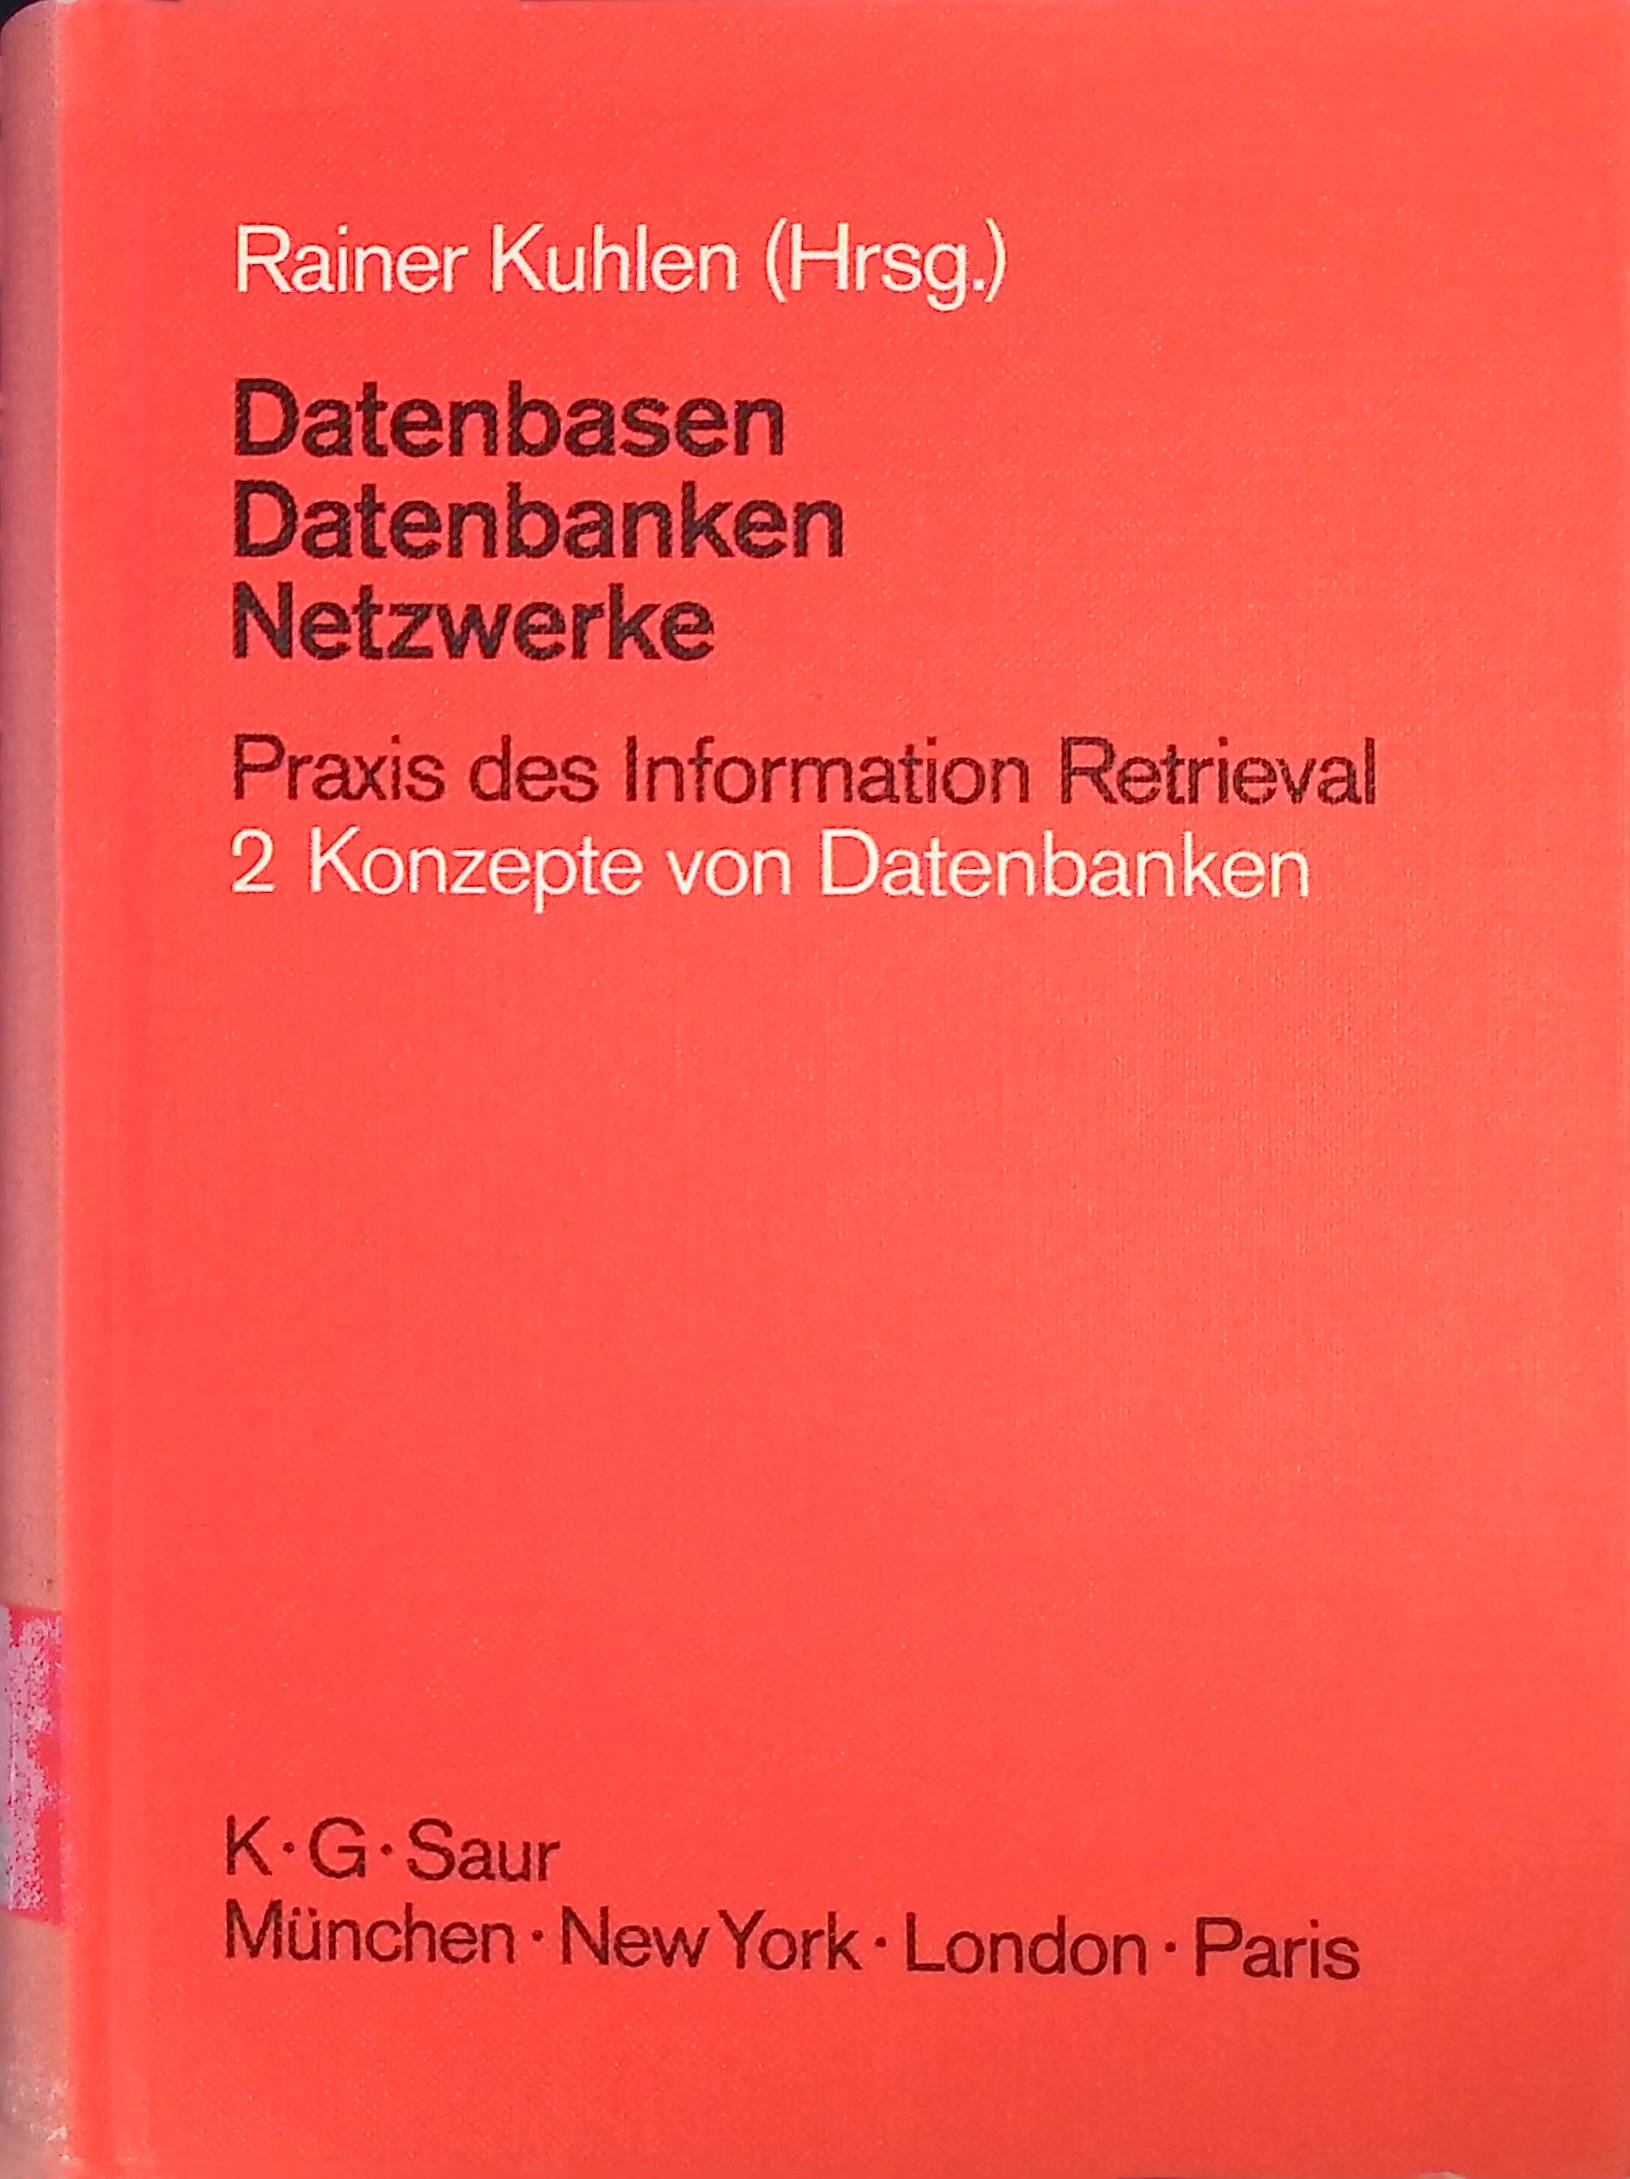 Datenbasen, Datenbanken, Netzwerke. Praxis des Information Retrieval. Konzepte von Datenbanken; Bd. 2 - Kuhlen, Rainer